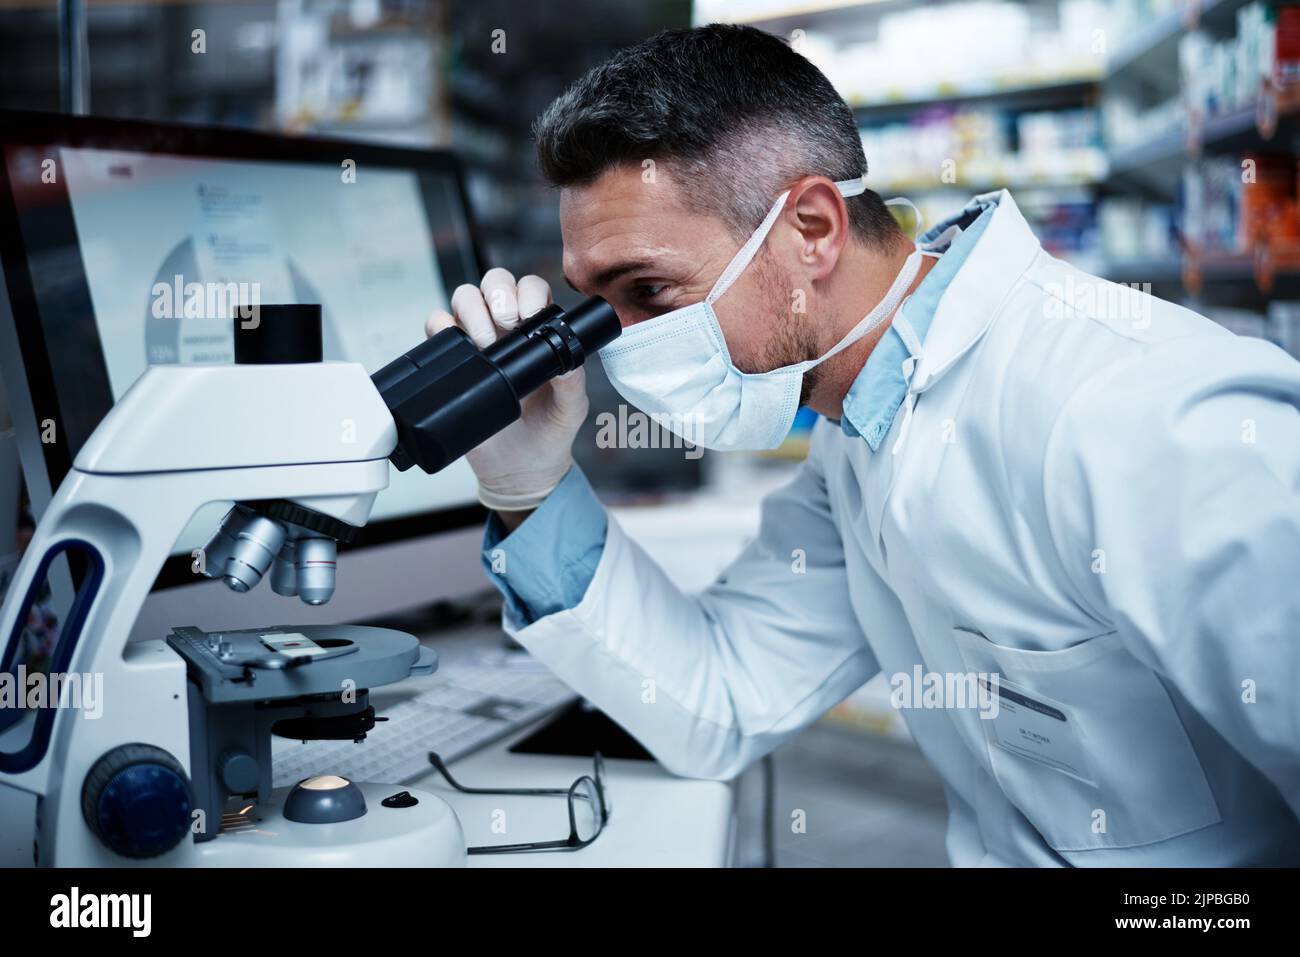 Definisce lo standard per un'eccellente ricerca clinica: Un uomo maturo che utilizza un microscopio mentre conduce ricerche farmaceutiche. Foto Stock